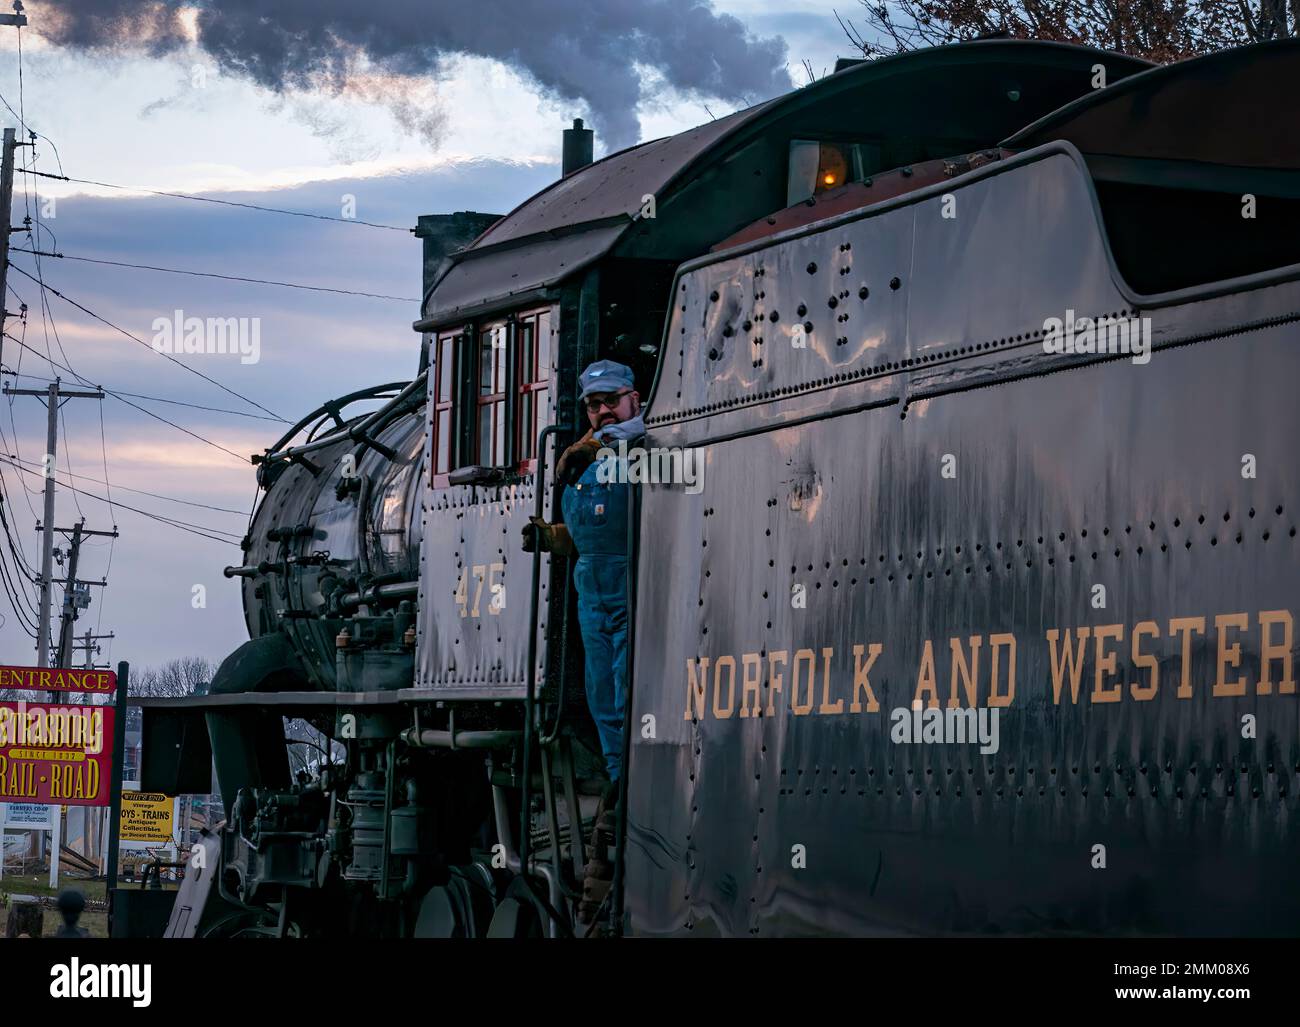 Strasburg, Pennsylvanie, 27 décembre 2022 - Vue sur un train de voyageurs à vapeur classique arrivant dans une gare qui soufflait de fumée et de vapeur, le jour d'hiver Banque D'Images